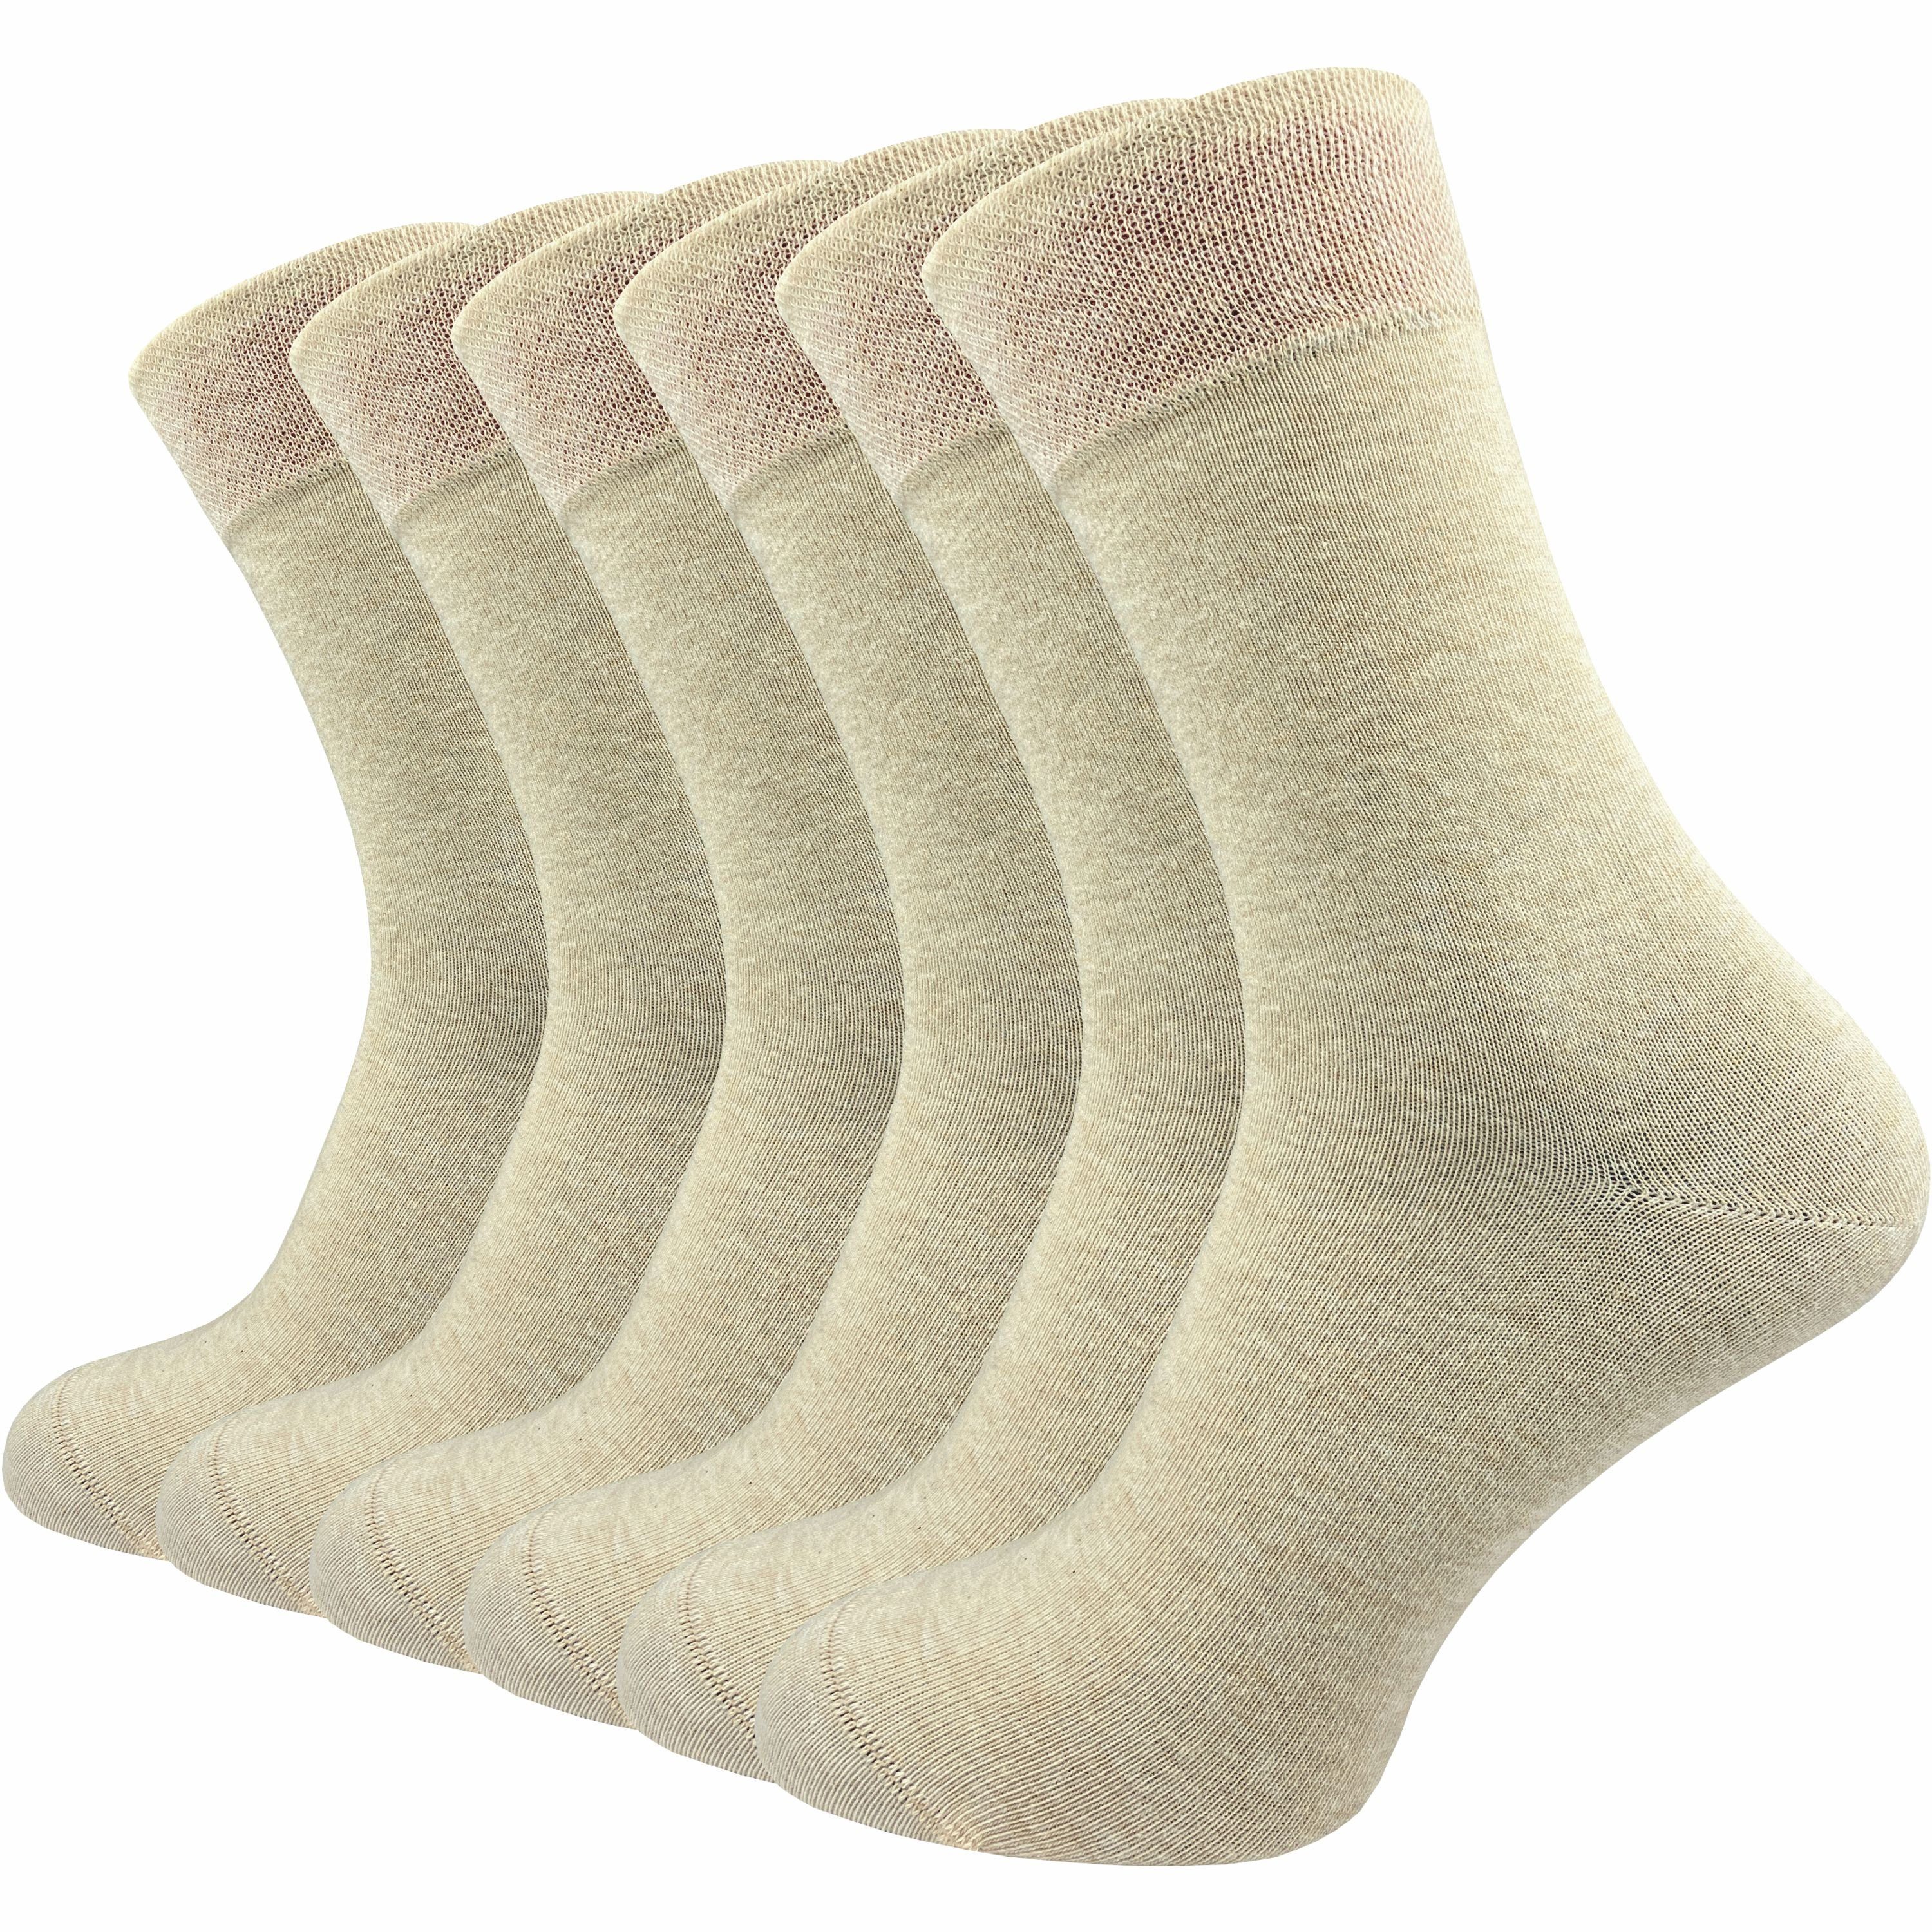 GAWILO Шкарпетки für Damen & Herren - Premium Komfortbund ohne drückende Naht (6 Paar) schwarz, grau & blau - aus hochwertiger, doppelt gekämmter Baumwolle